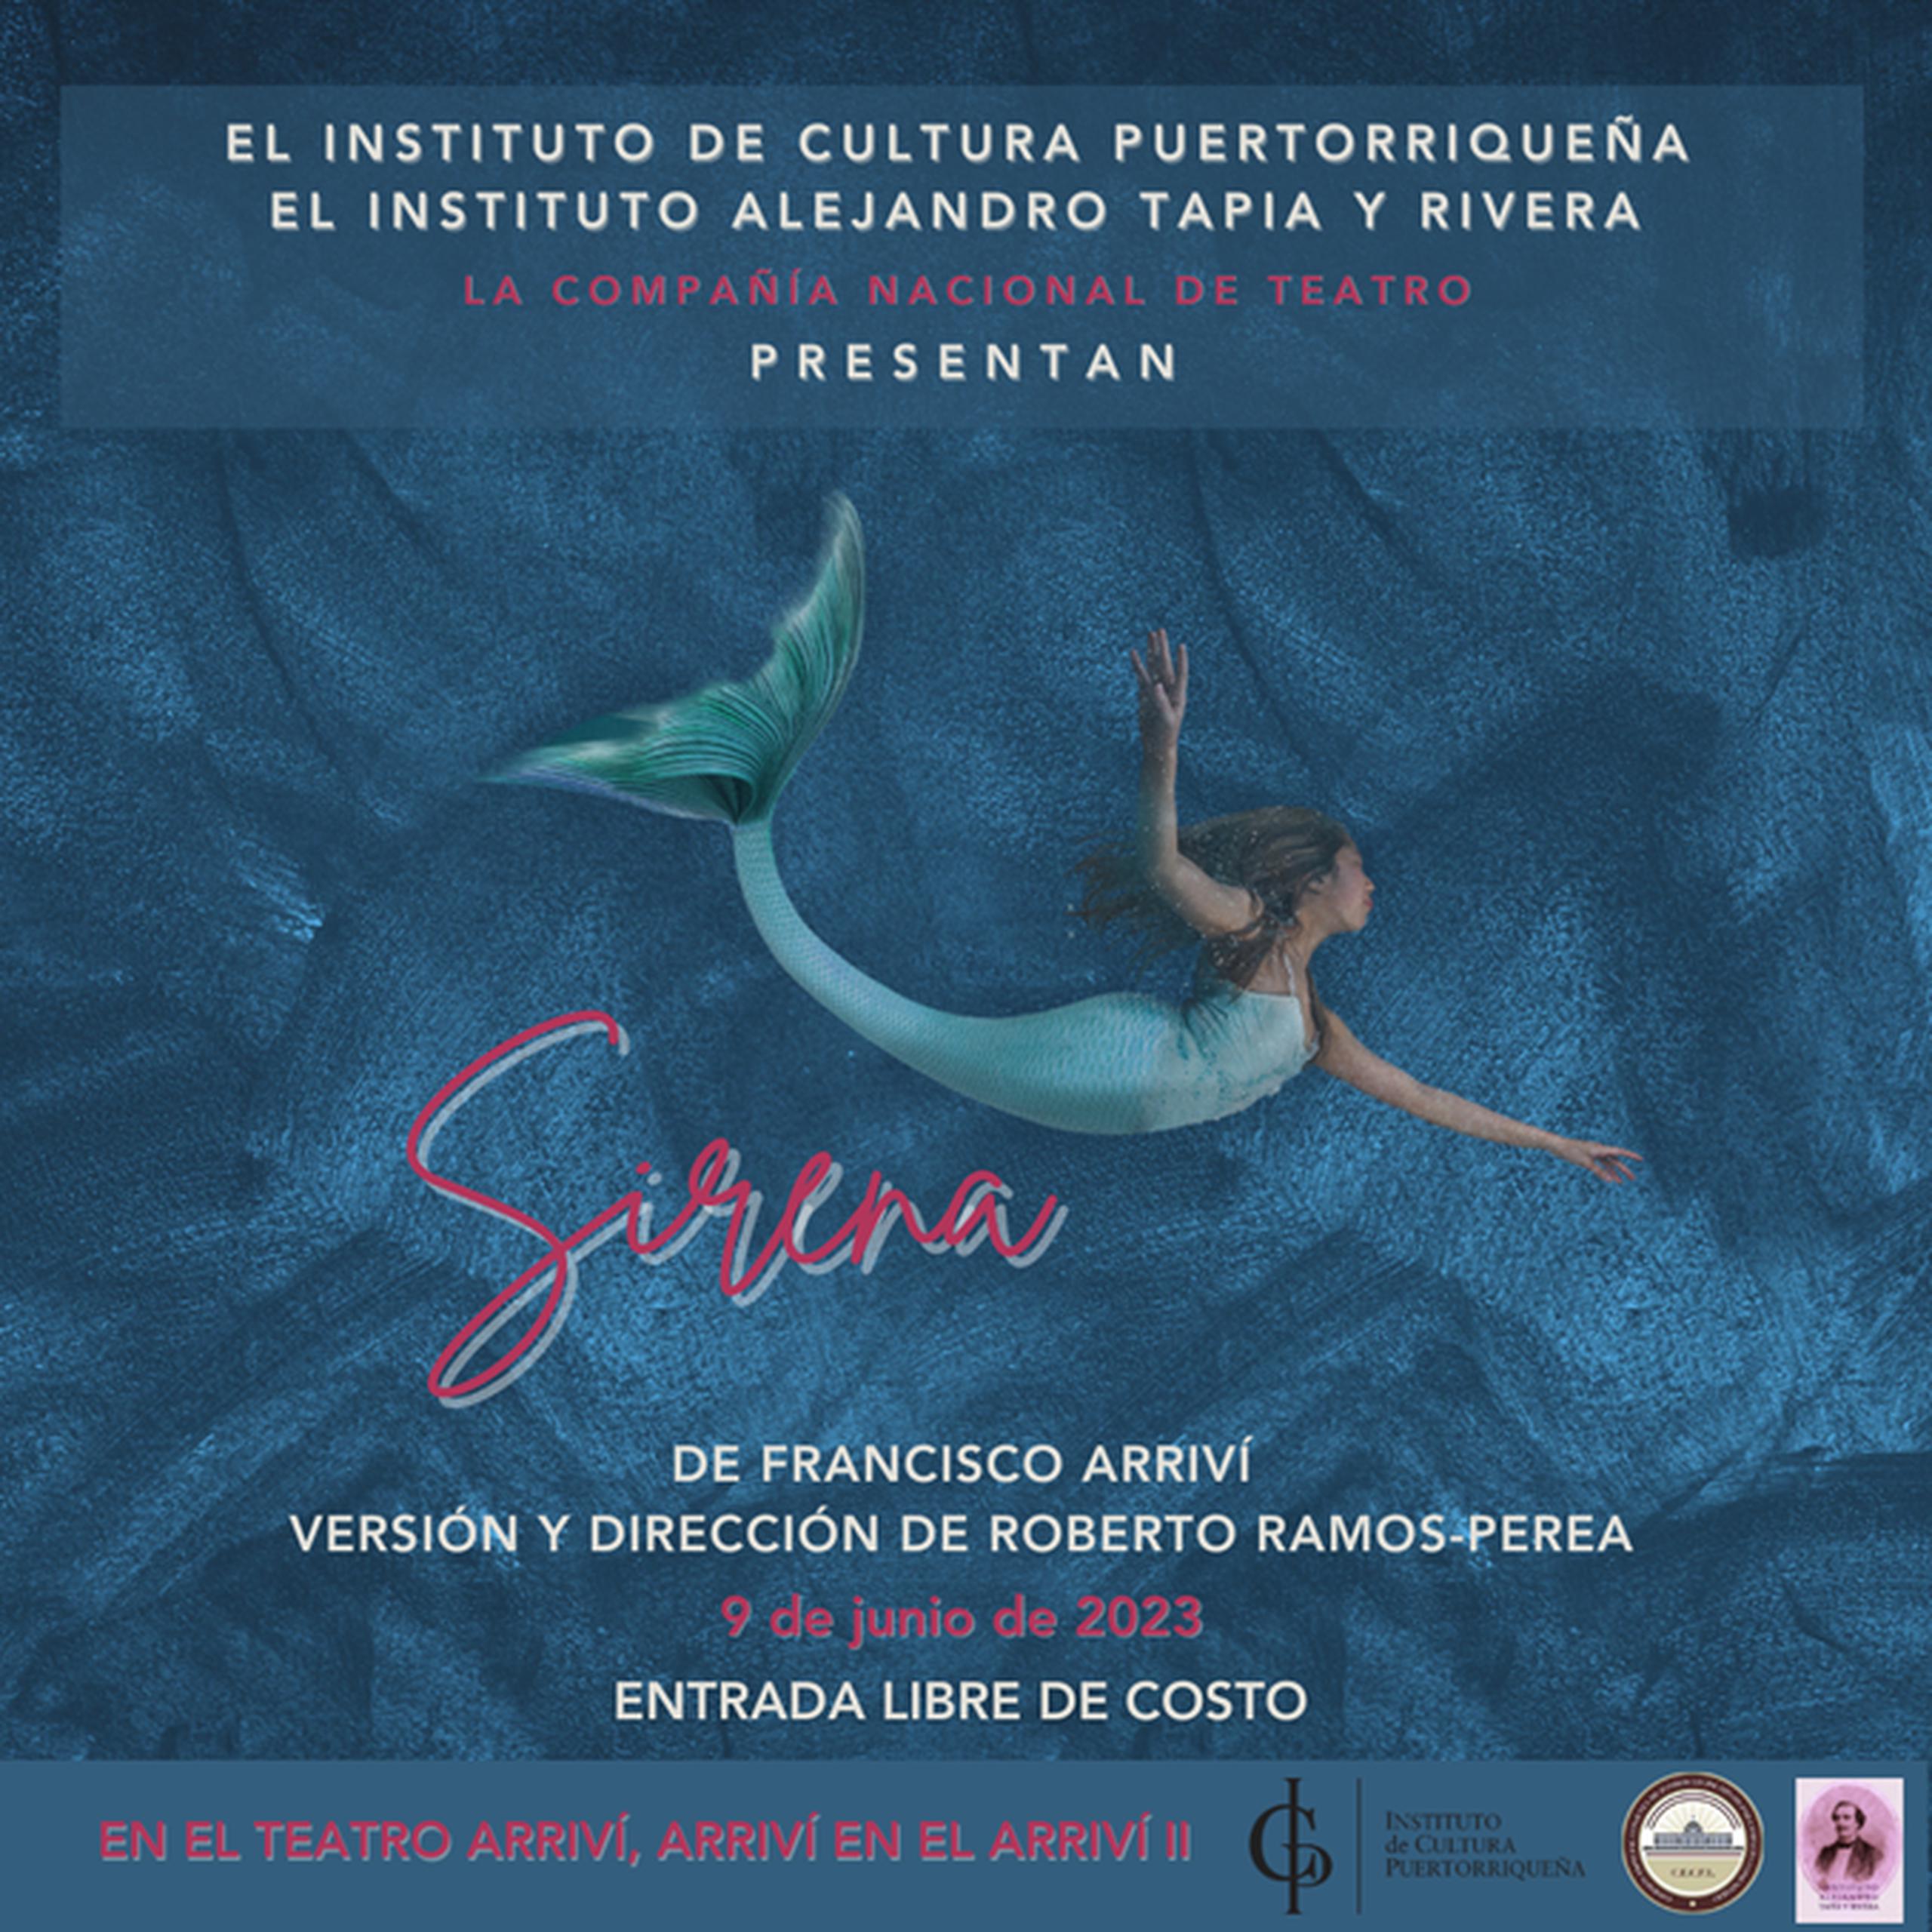 Afiche de la presentación de la obra teatral “Sirena”, del maestro Francisco Arriví.